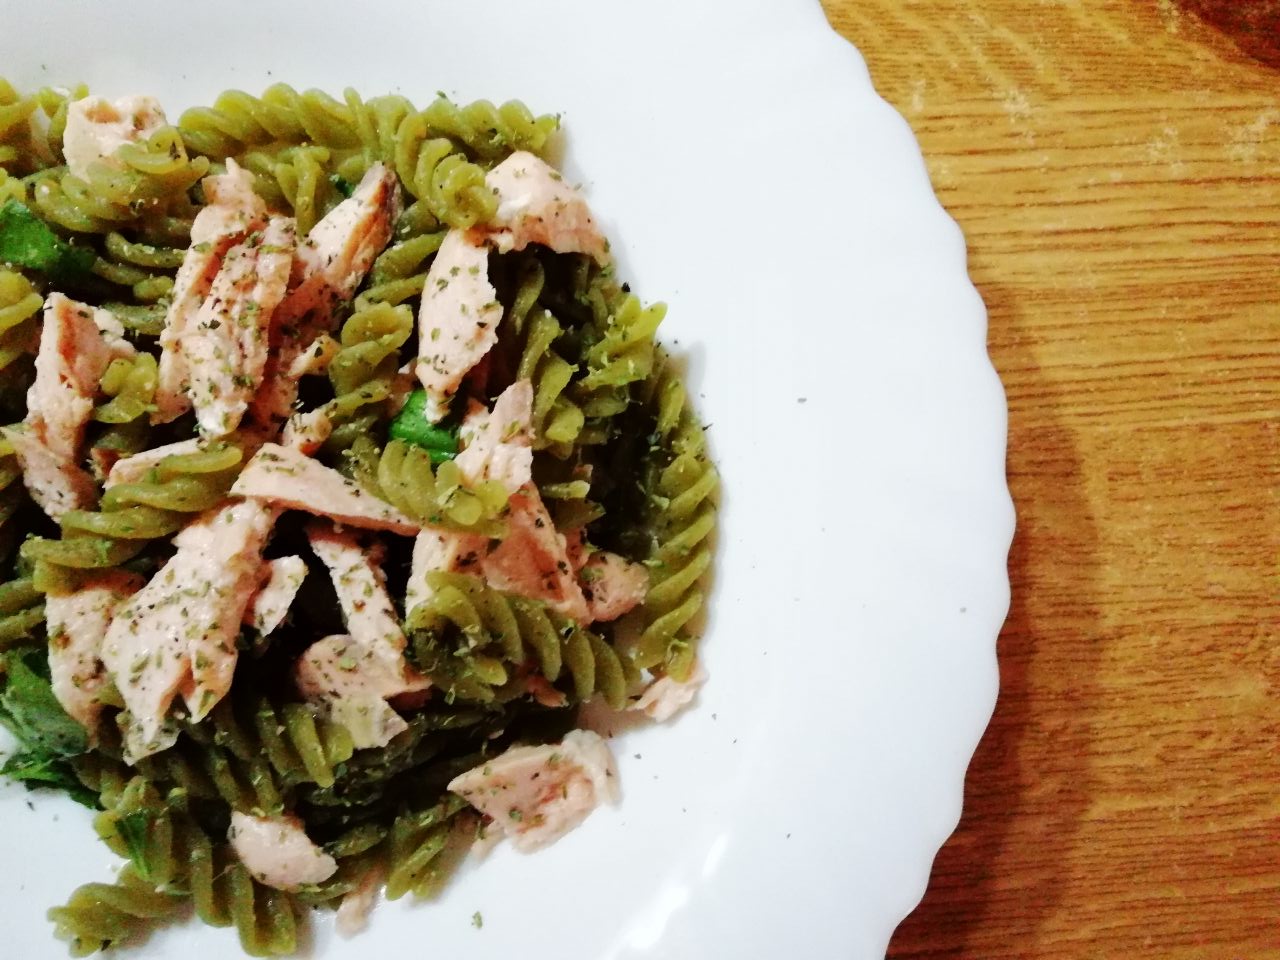 Primi piatti leggeri: pasta di piselli verdi al salmone!